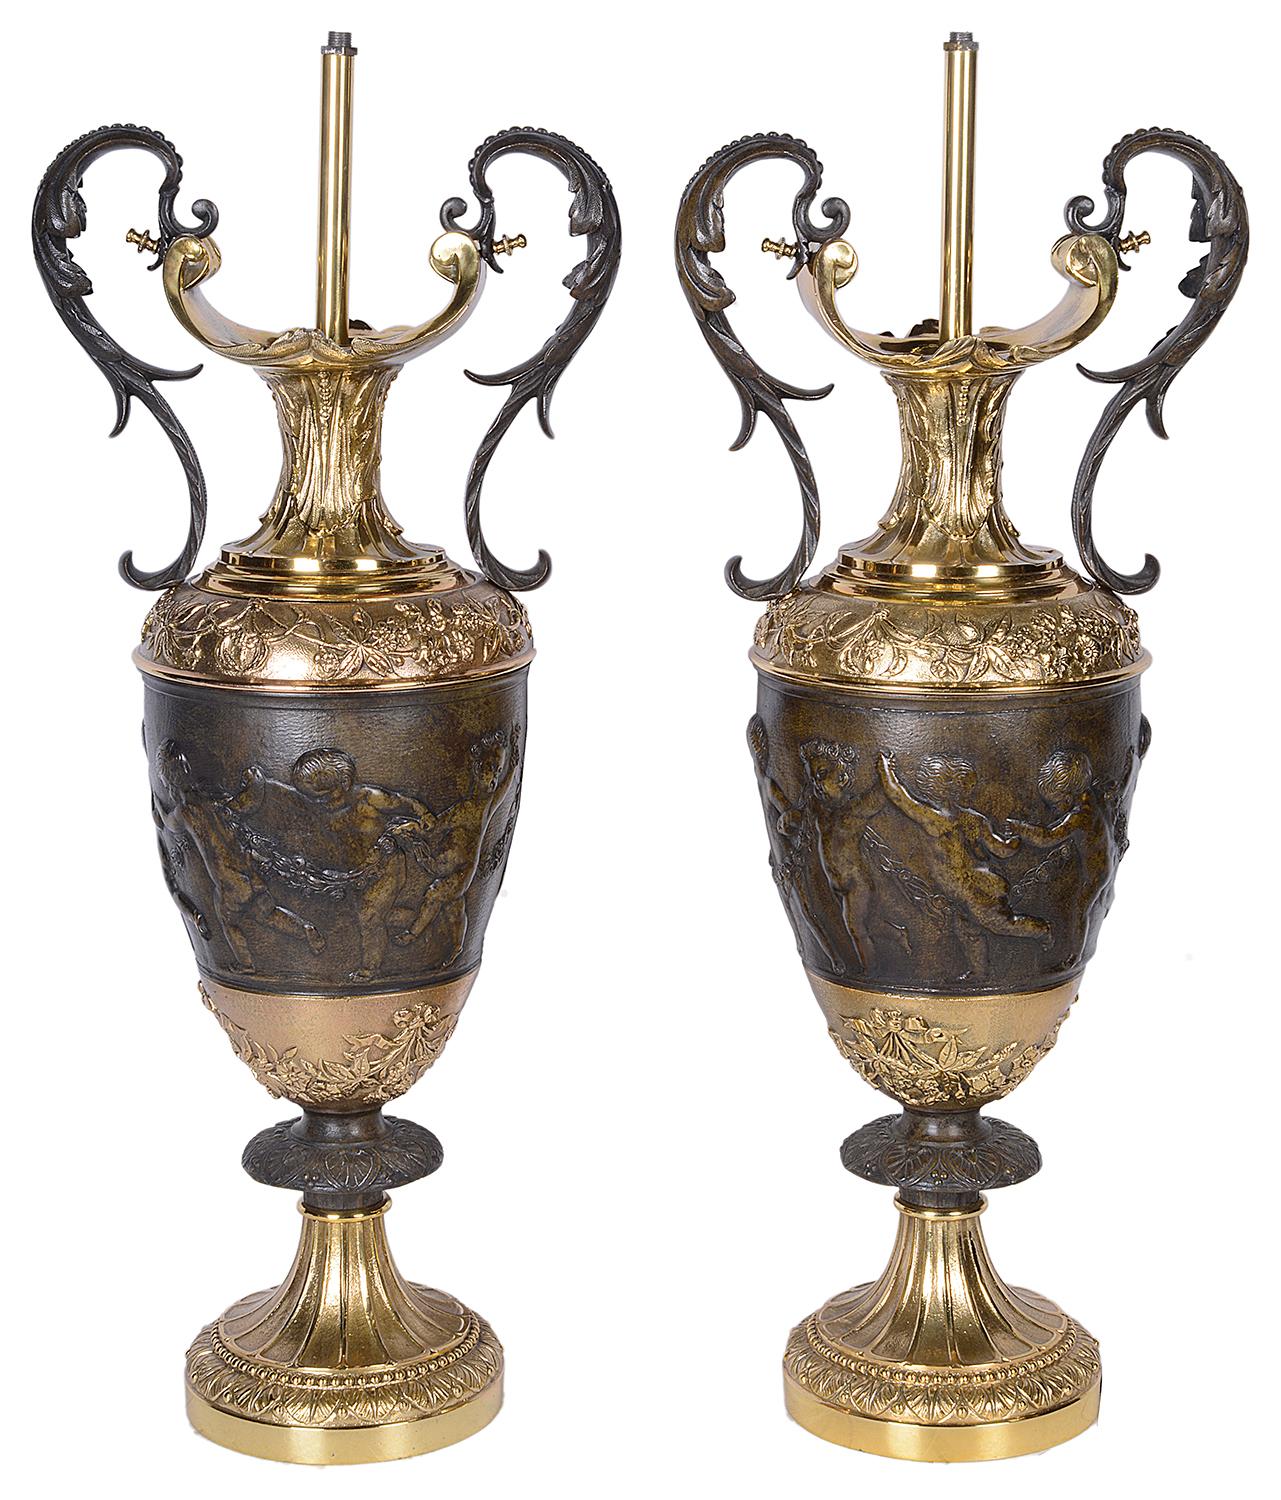 Une paire de vases / lampes de style italien classique en bronze et bronze doré à deux poignées, chacun ayant une décoration feuillue avec des chérubins dansant et se tenant la main.